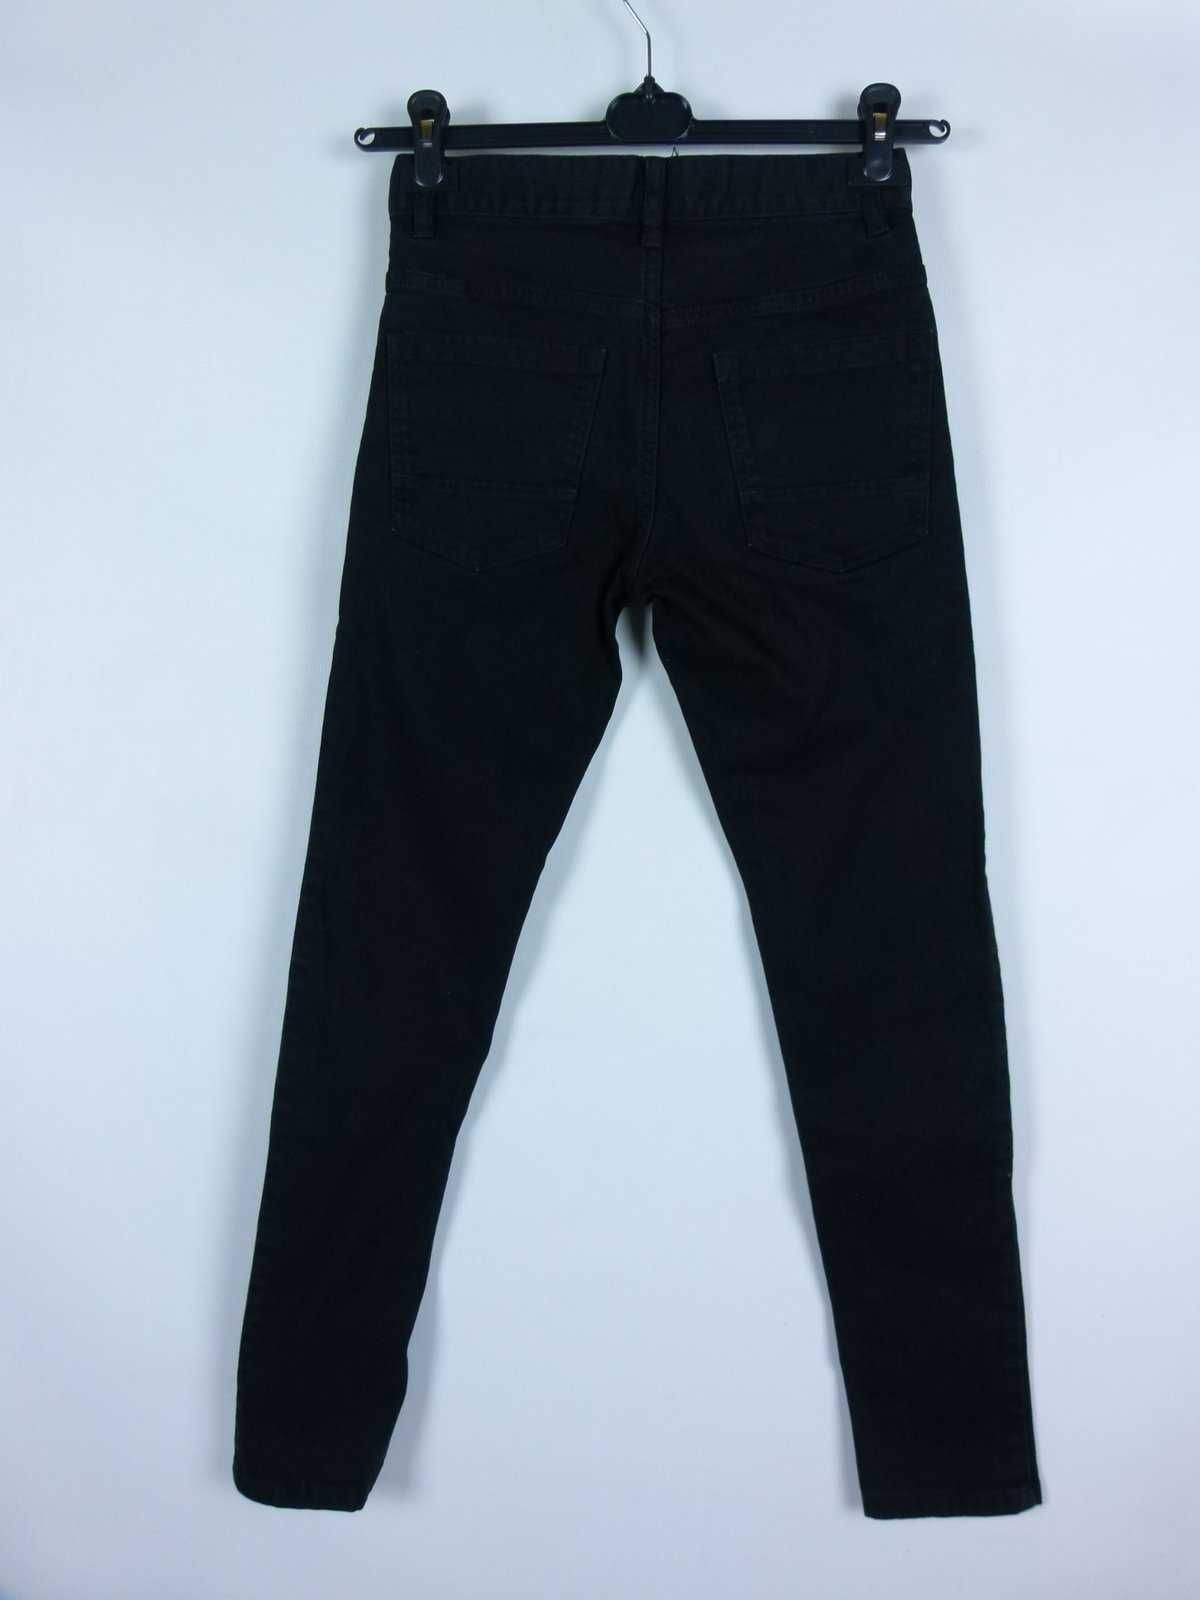 NEXT spodnie jeans - W 26R / L 31